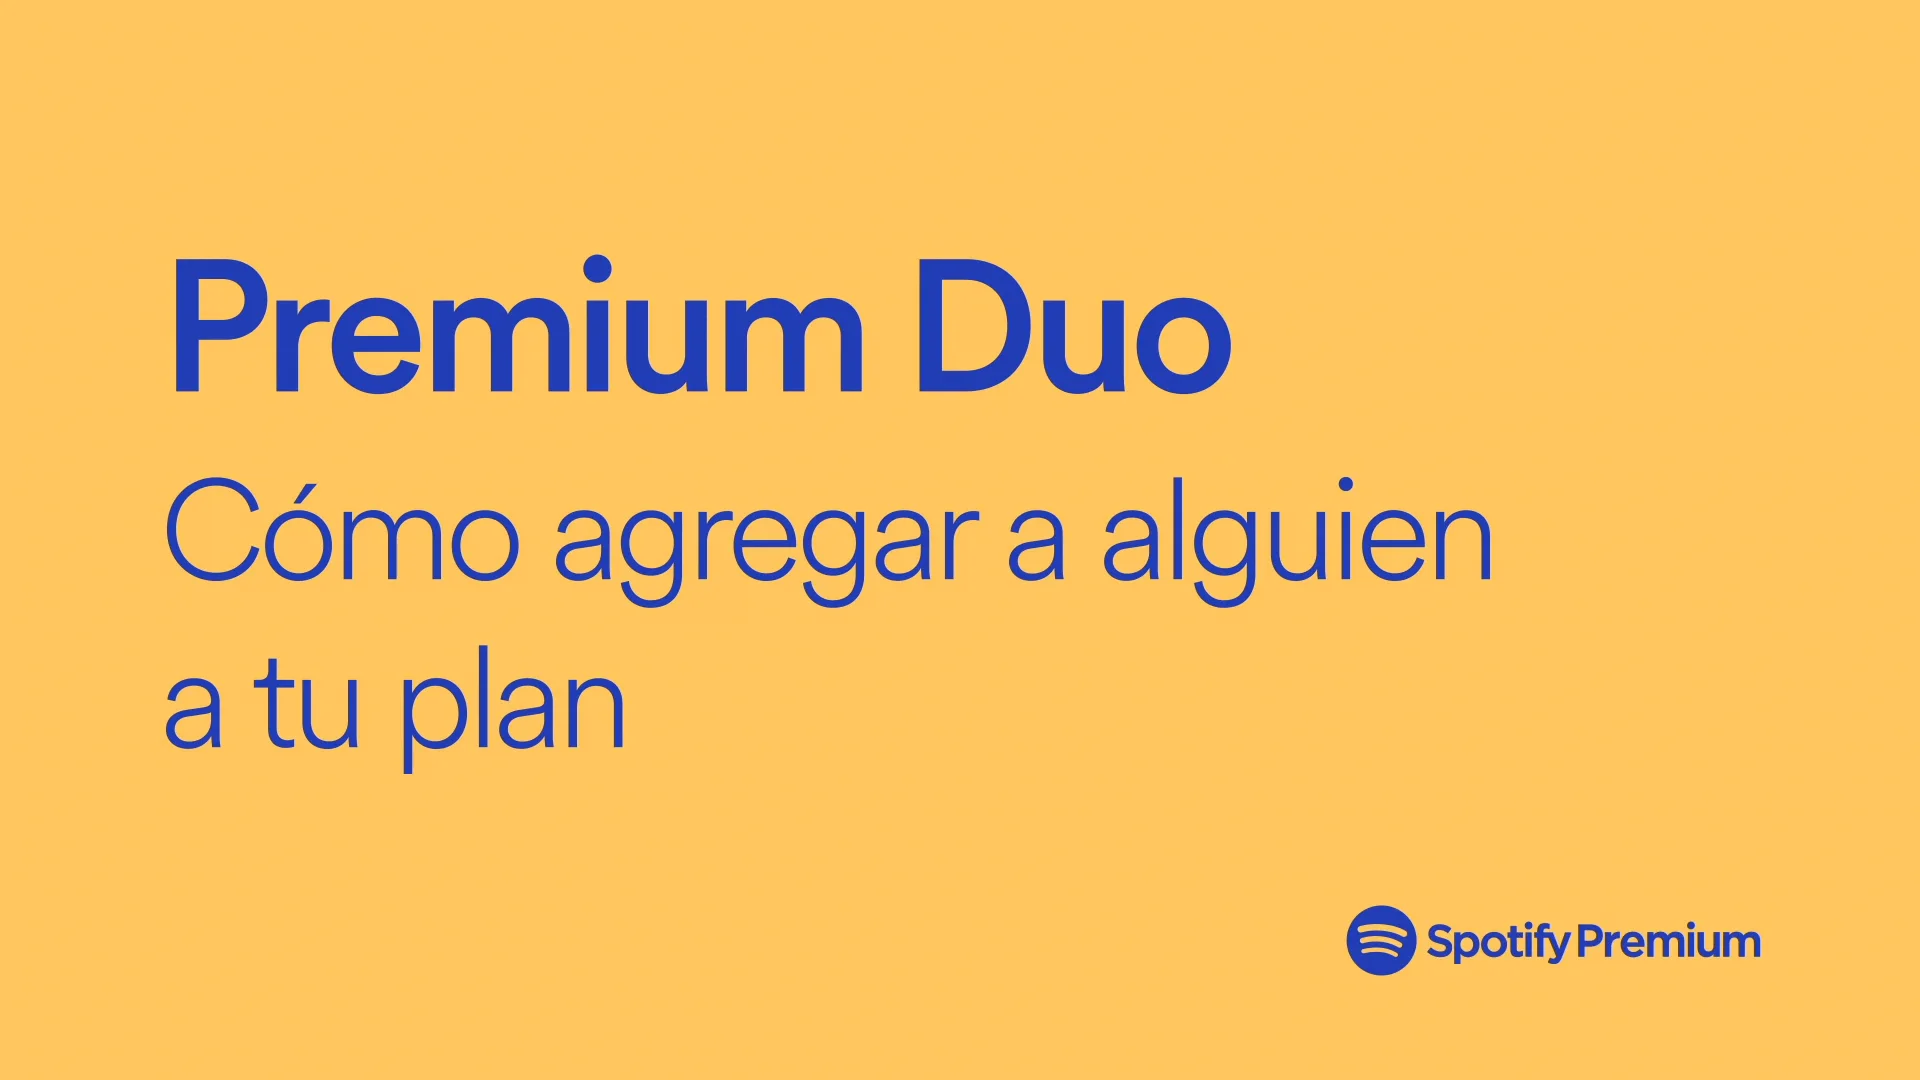 Spotify Premium Duo: cómo agregar a alguien a tu plan on Vimeo